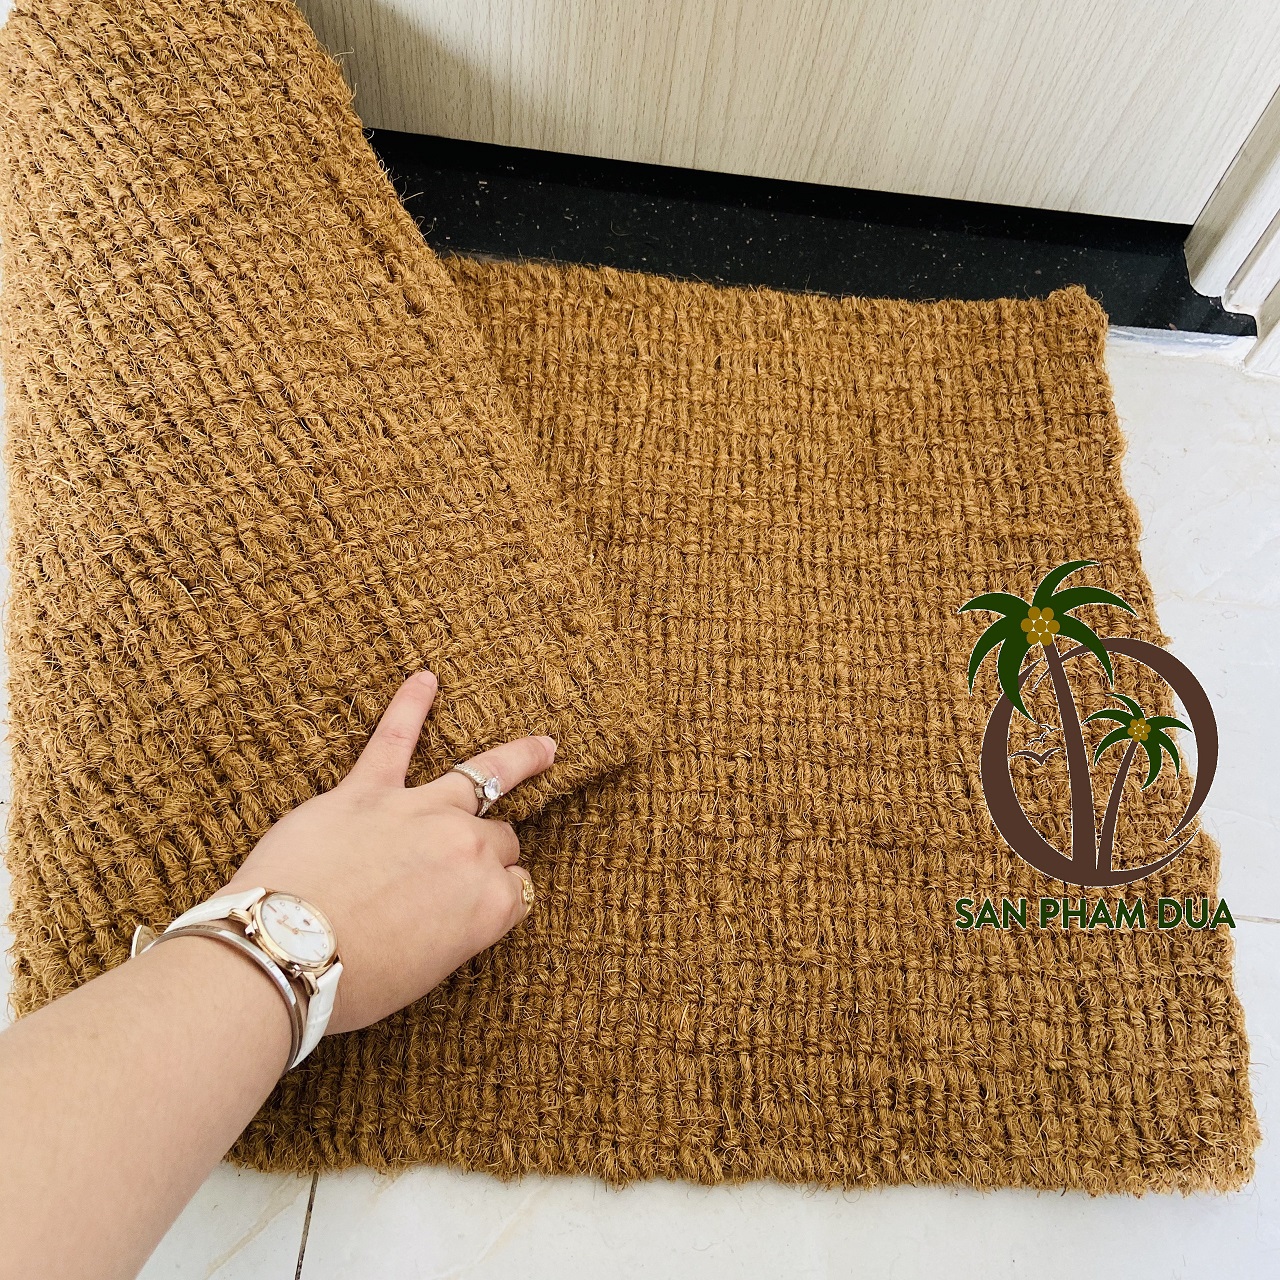 Thảm chùi chân bằng xơ dừa – Thảm xơ dừa dệt truyền thống – thân thiện môi trường